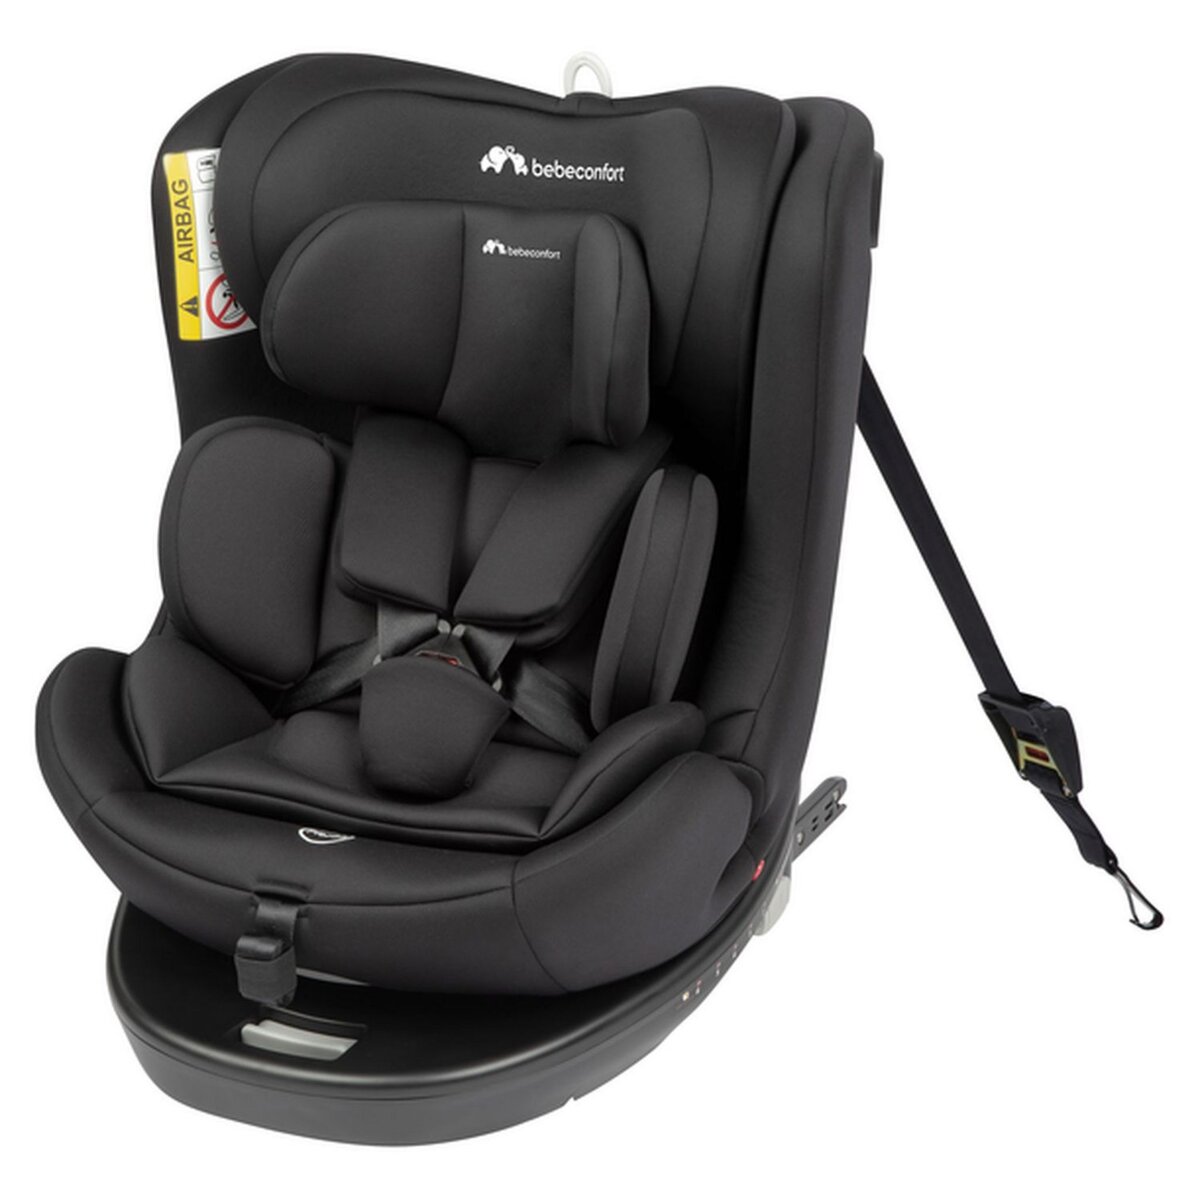 Coussin de siège auto pour enfant pour protéger vos combinaisons